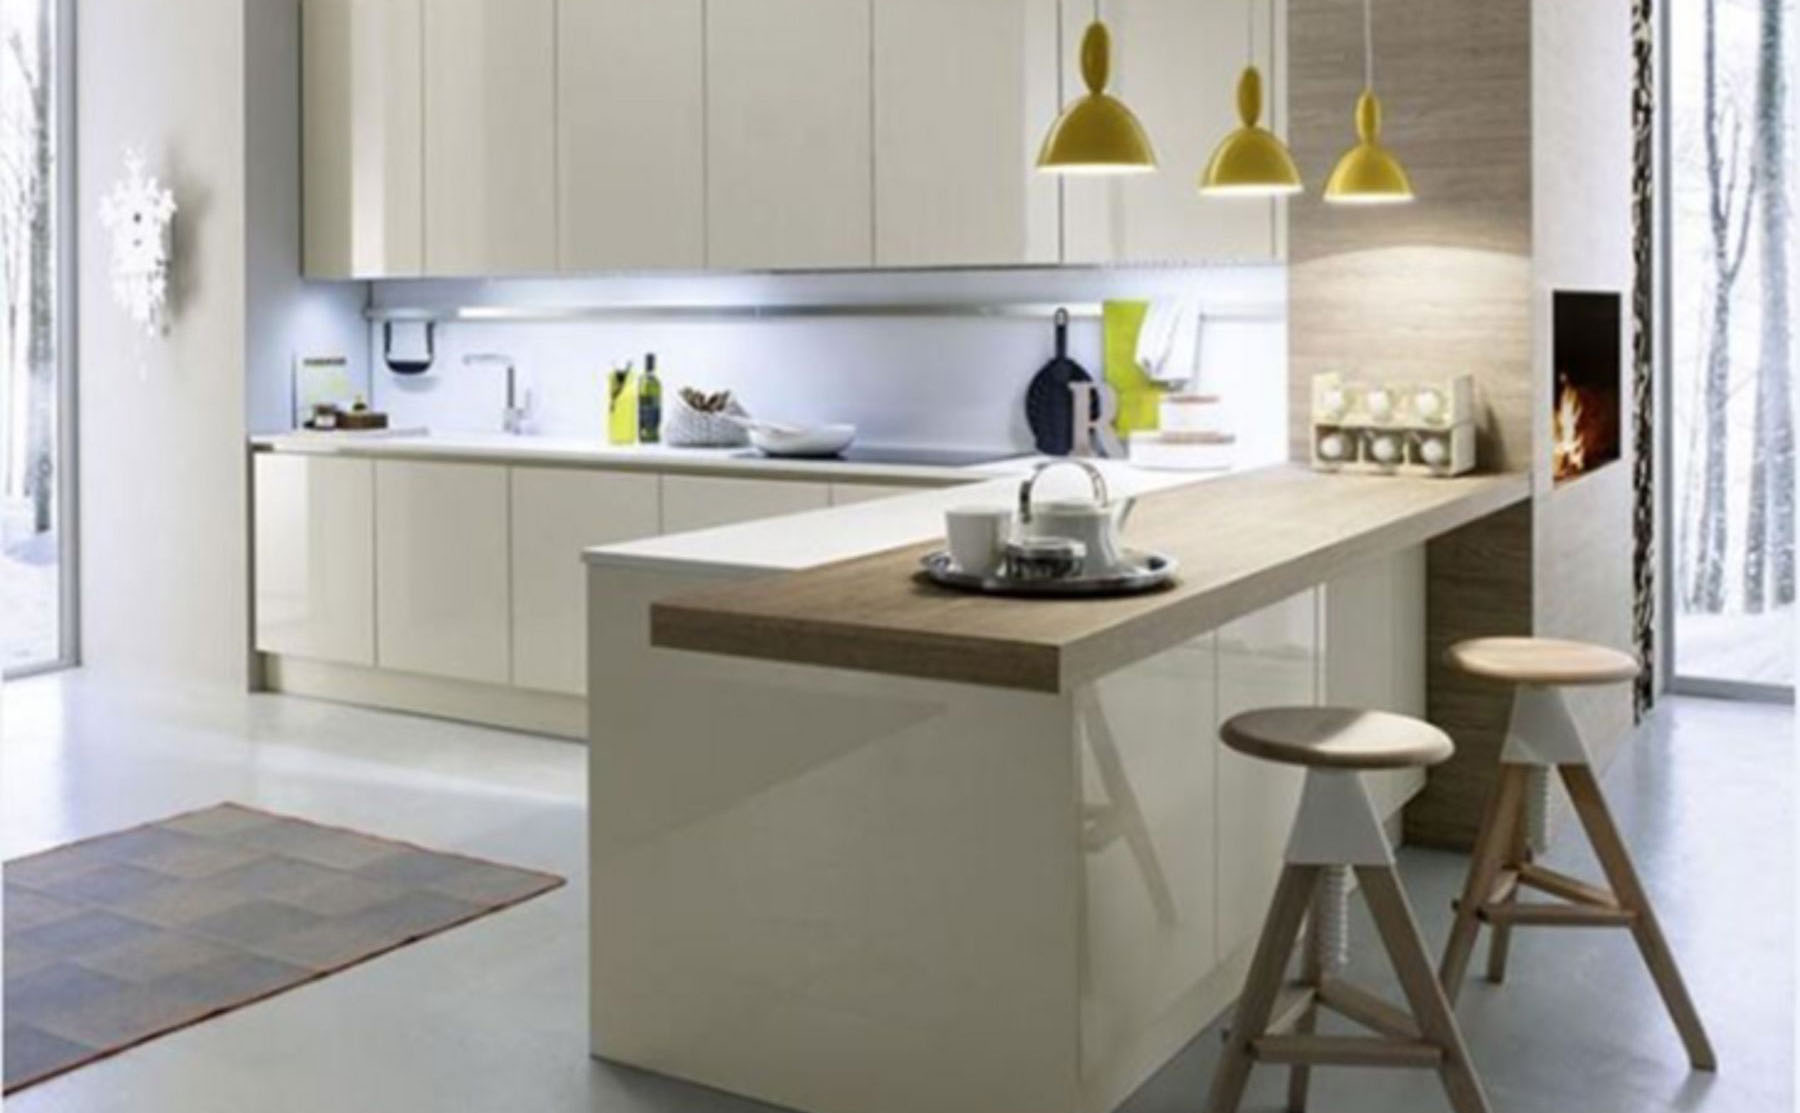 12 Contoh Desain Interior Dapur Minimalis 